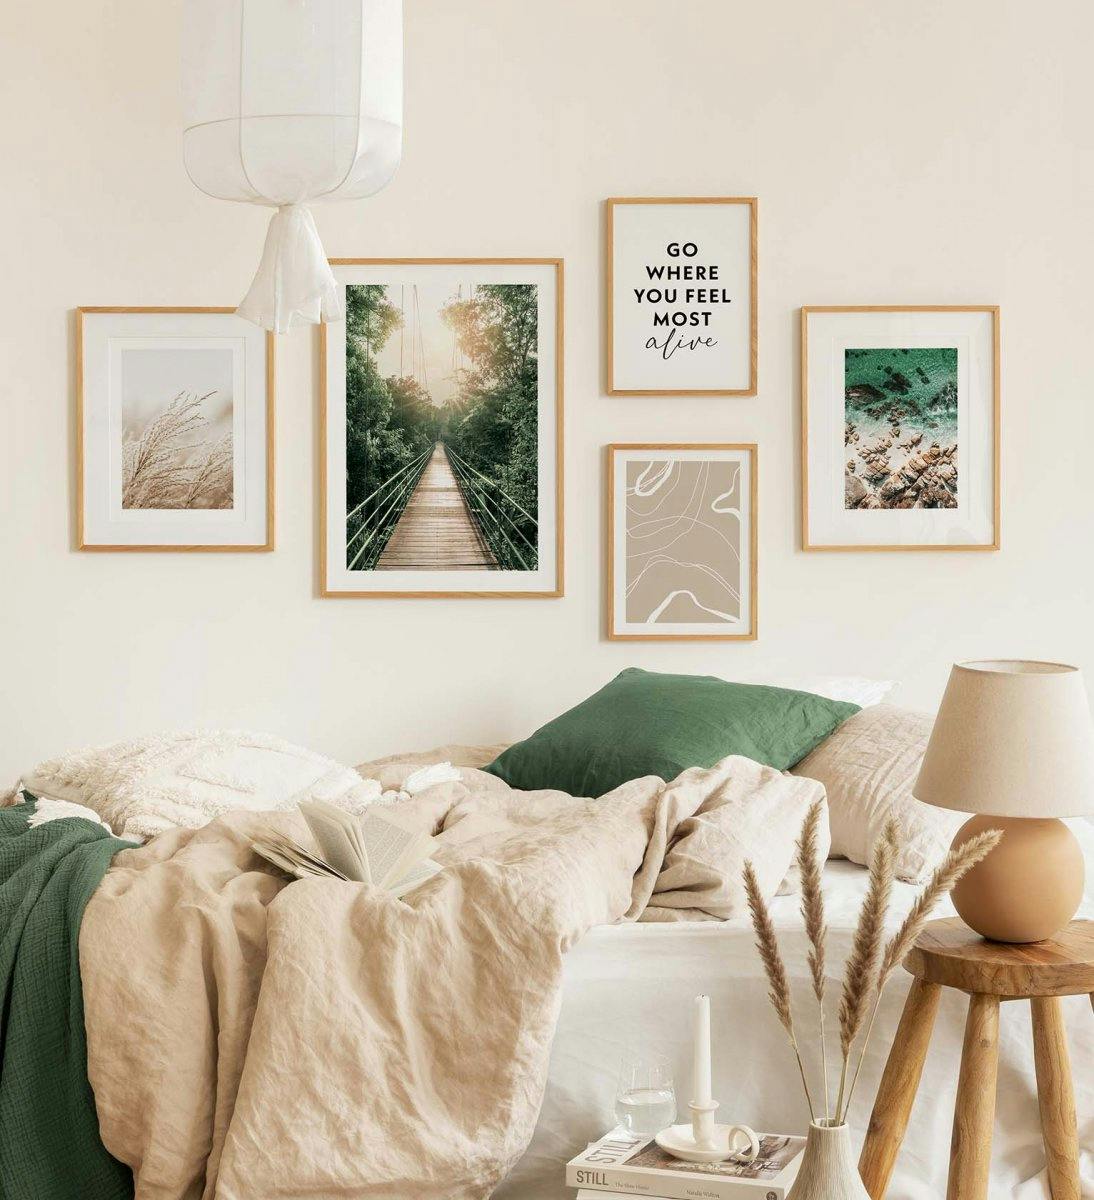 Grüne Bilderwand mit Naturfotografien kombiniert mit Zitaten und Line-Art für das Schlafzimmer